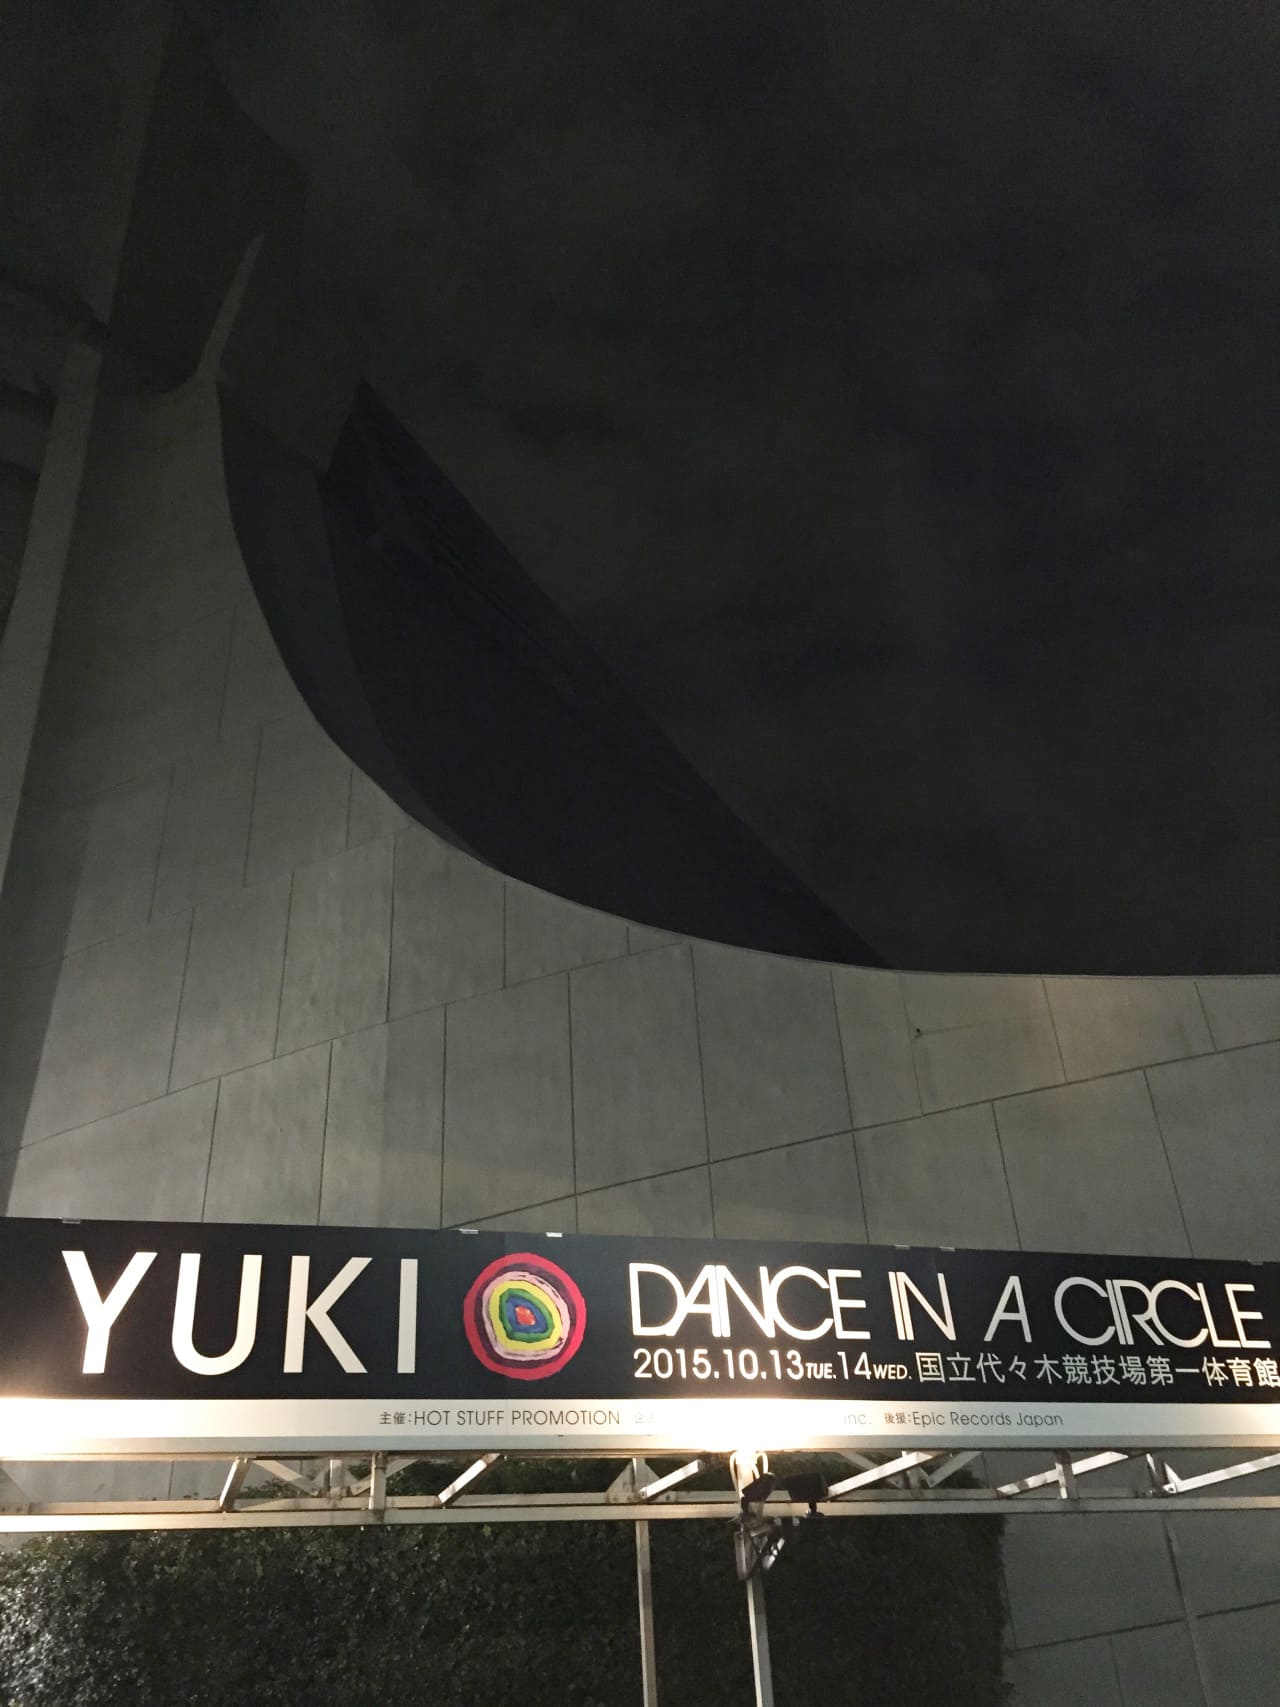 YUKI dance in a circle ’15